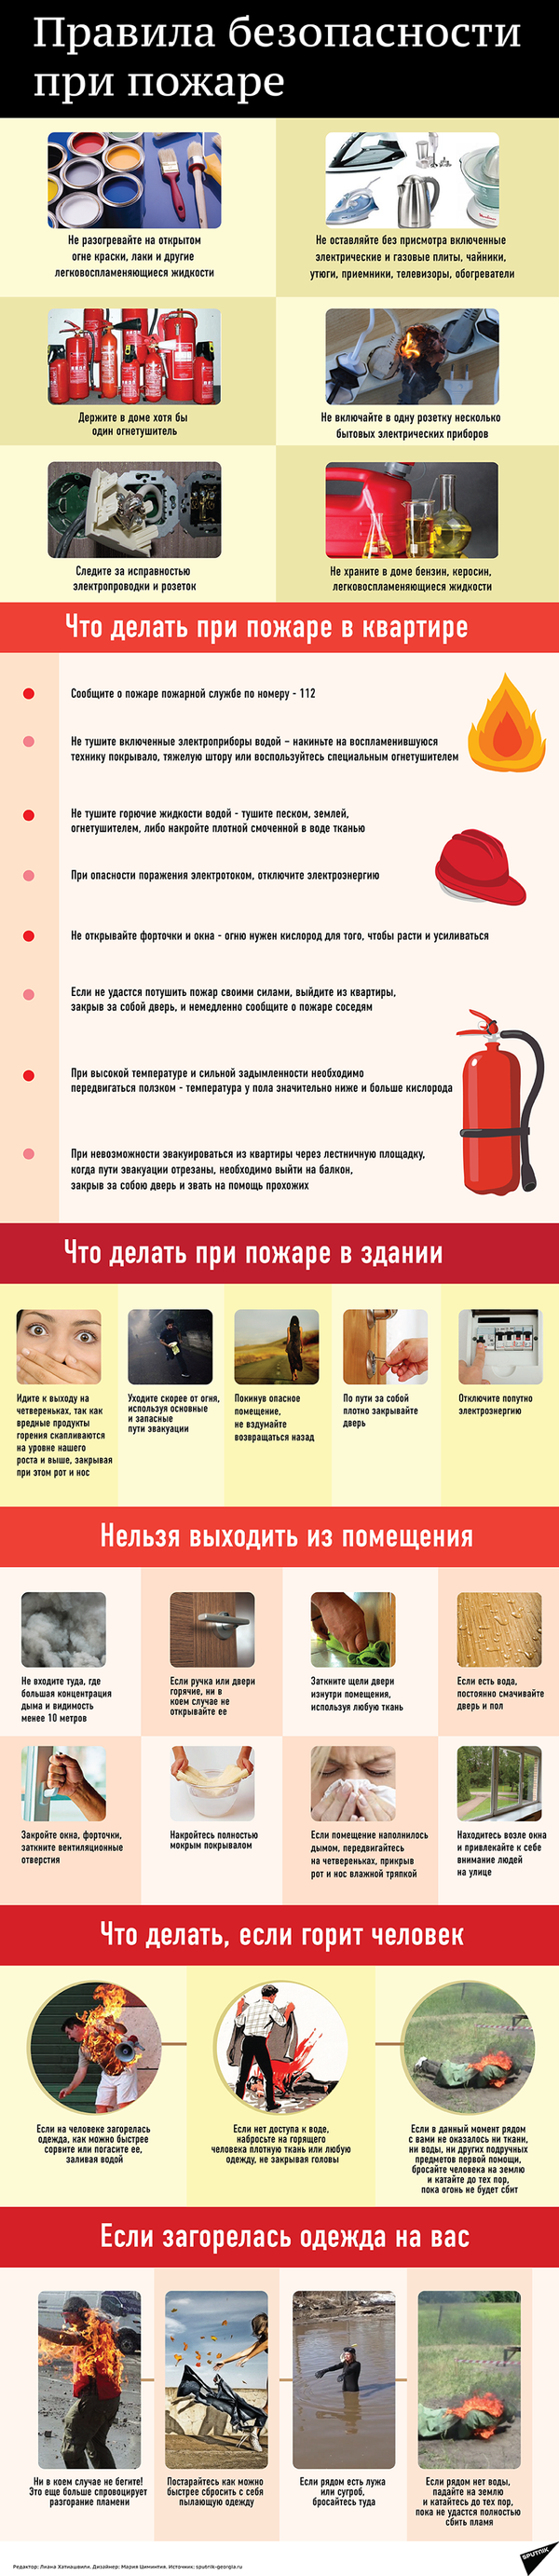 Правила безопасности при пожаре - Sputnik Грузия